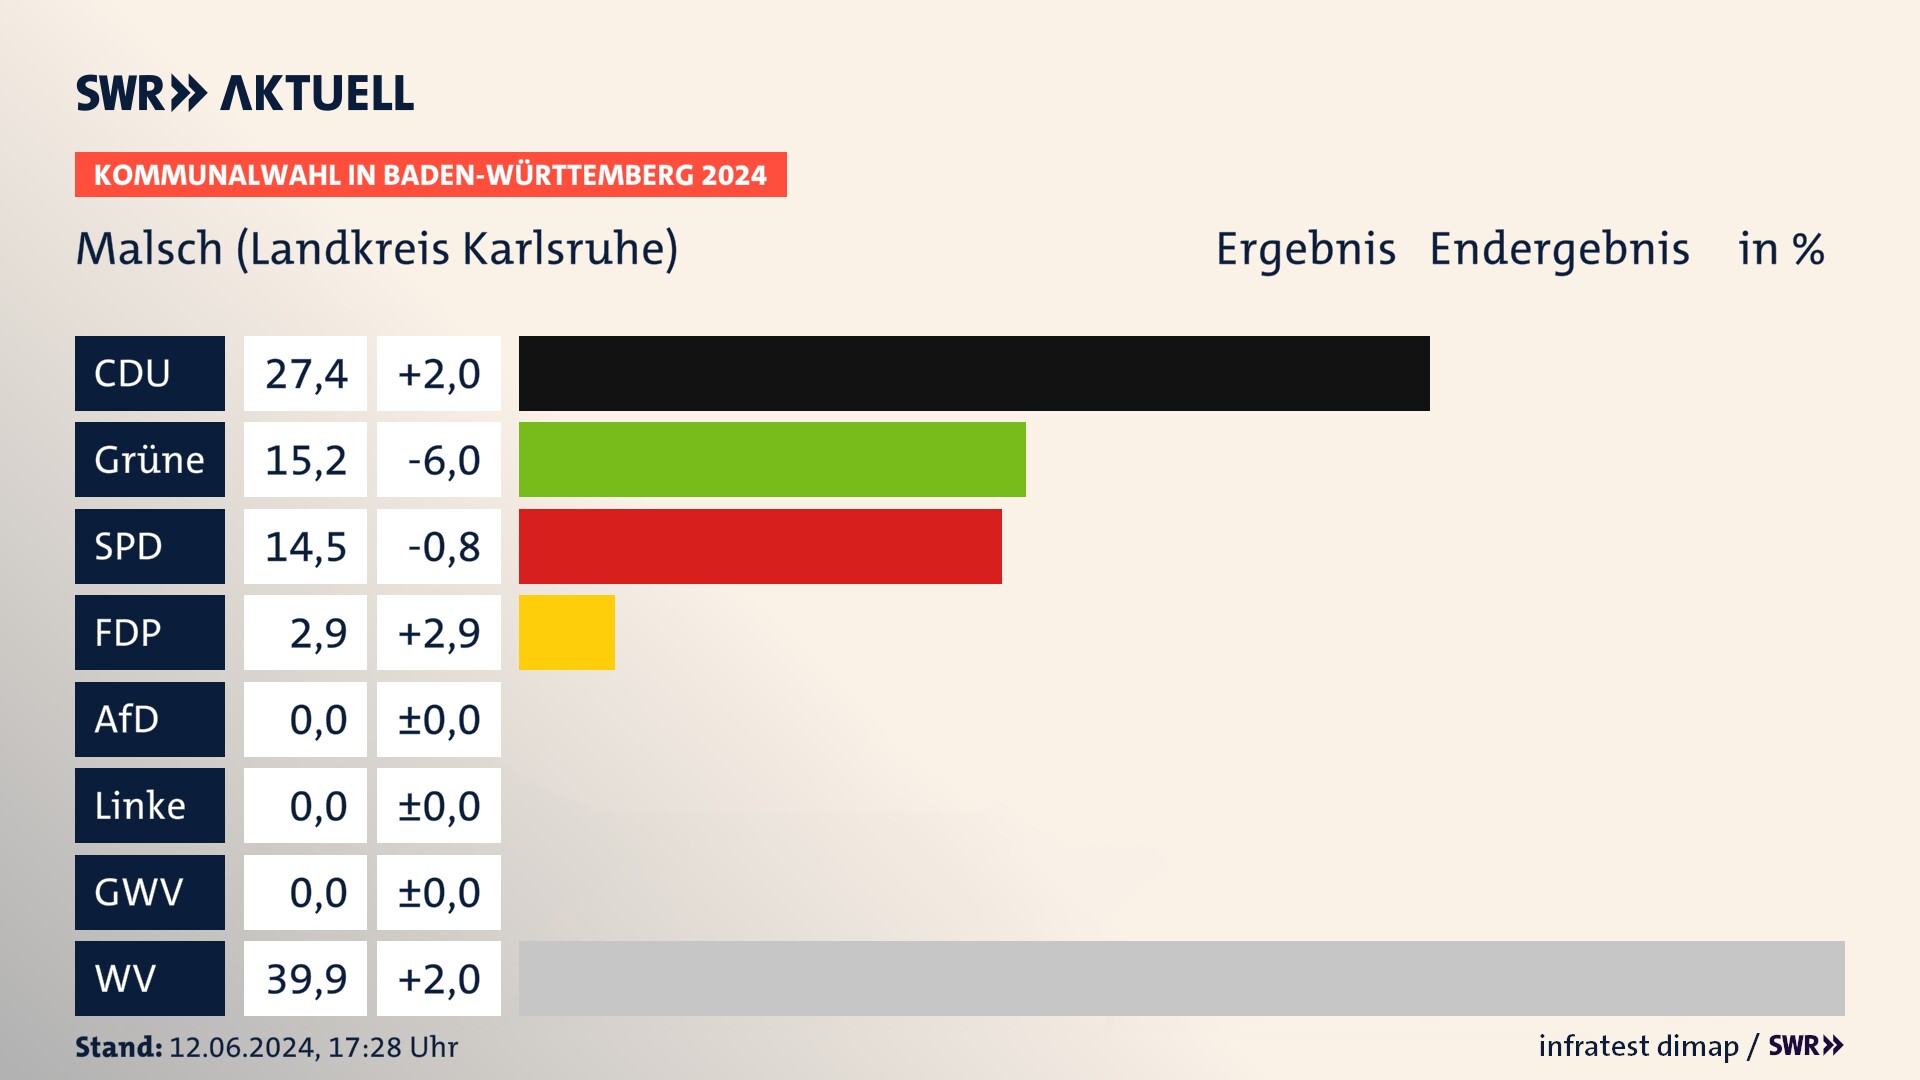 Kommunalwahl 2024 Endergebnis Zweitstimme für Malsch (Landkreis Karlsruhe). In Malsch erzielt die CDU 27,4 Prozent der gültigen  Stimmen. Die Grünen landen bei 15,2 Prozent. Die SPD erreicht 14,5 Prozent. Die FDP kommt auf 2,9 Prozent. Die Wählervereinigungen landen bei 39,9 Prozent.